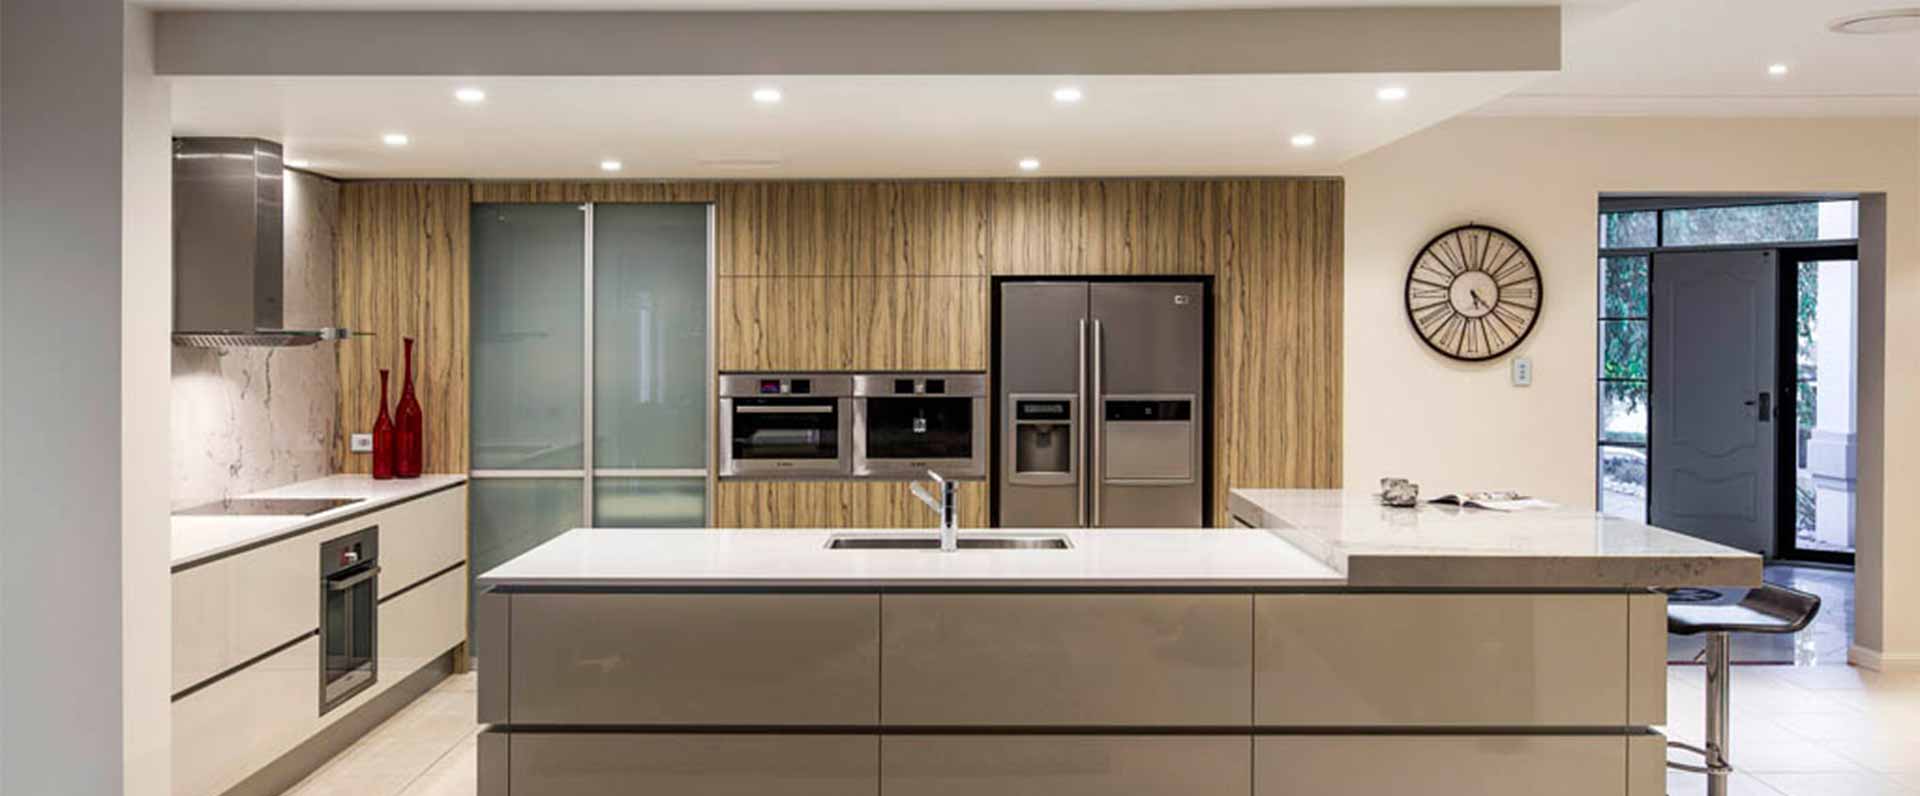 kitchen design services sydney